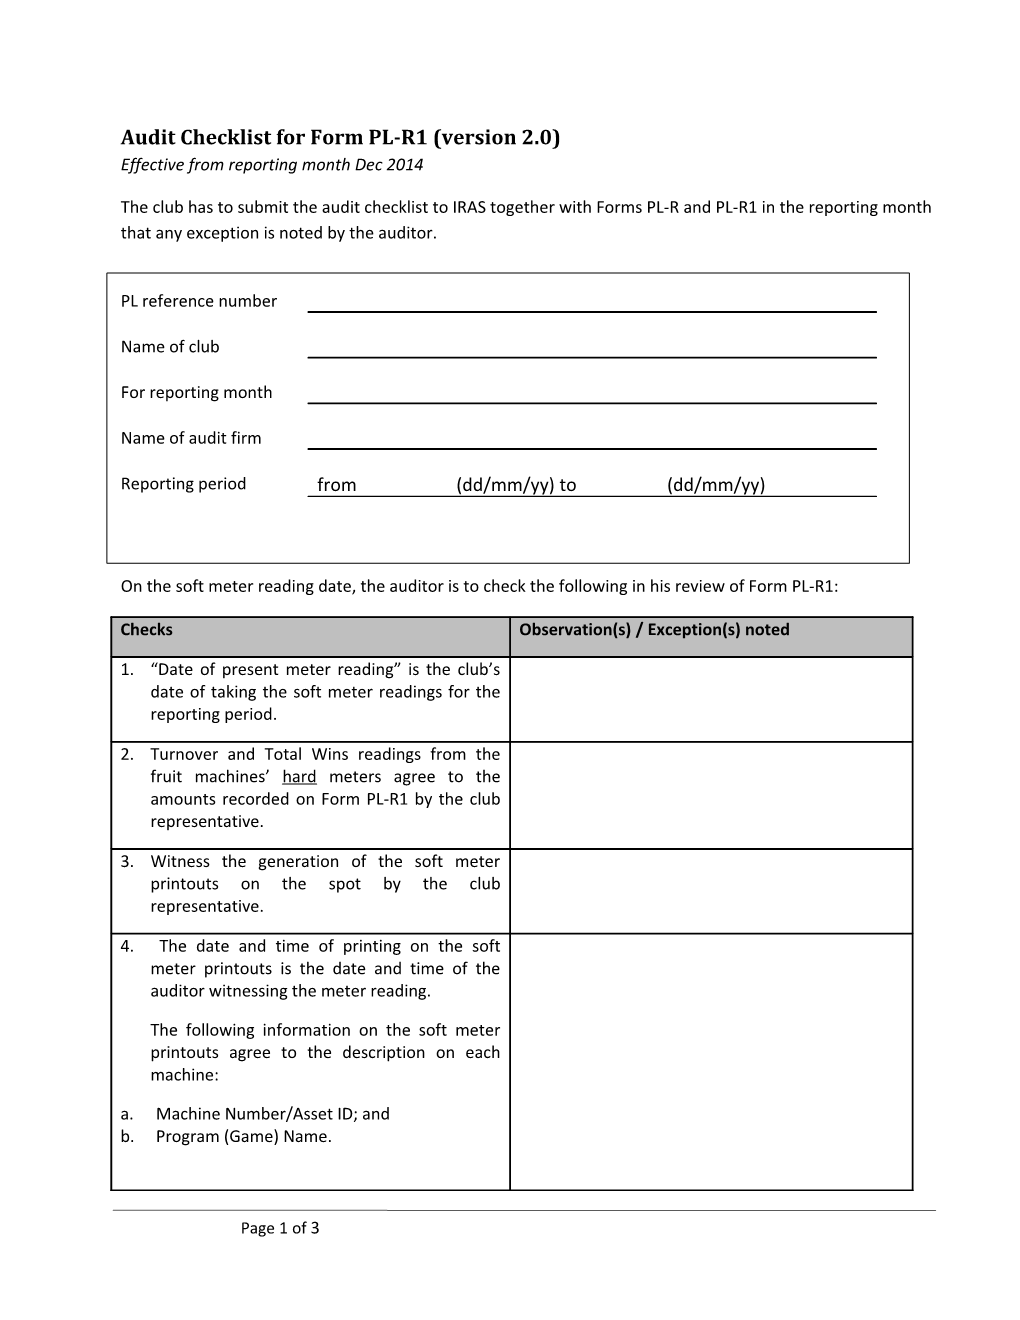 Audit Checklist for Form PL-R1 (Version 2.0)